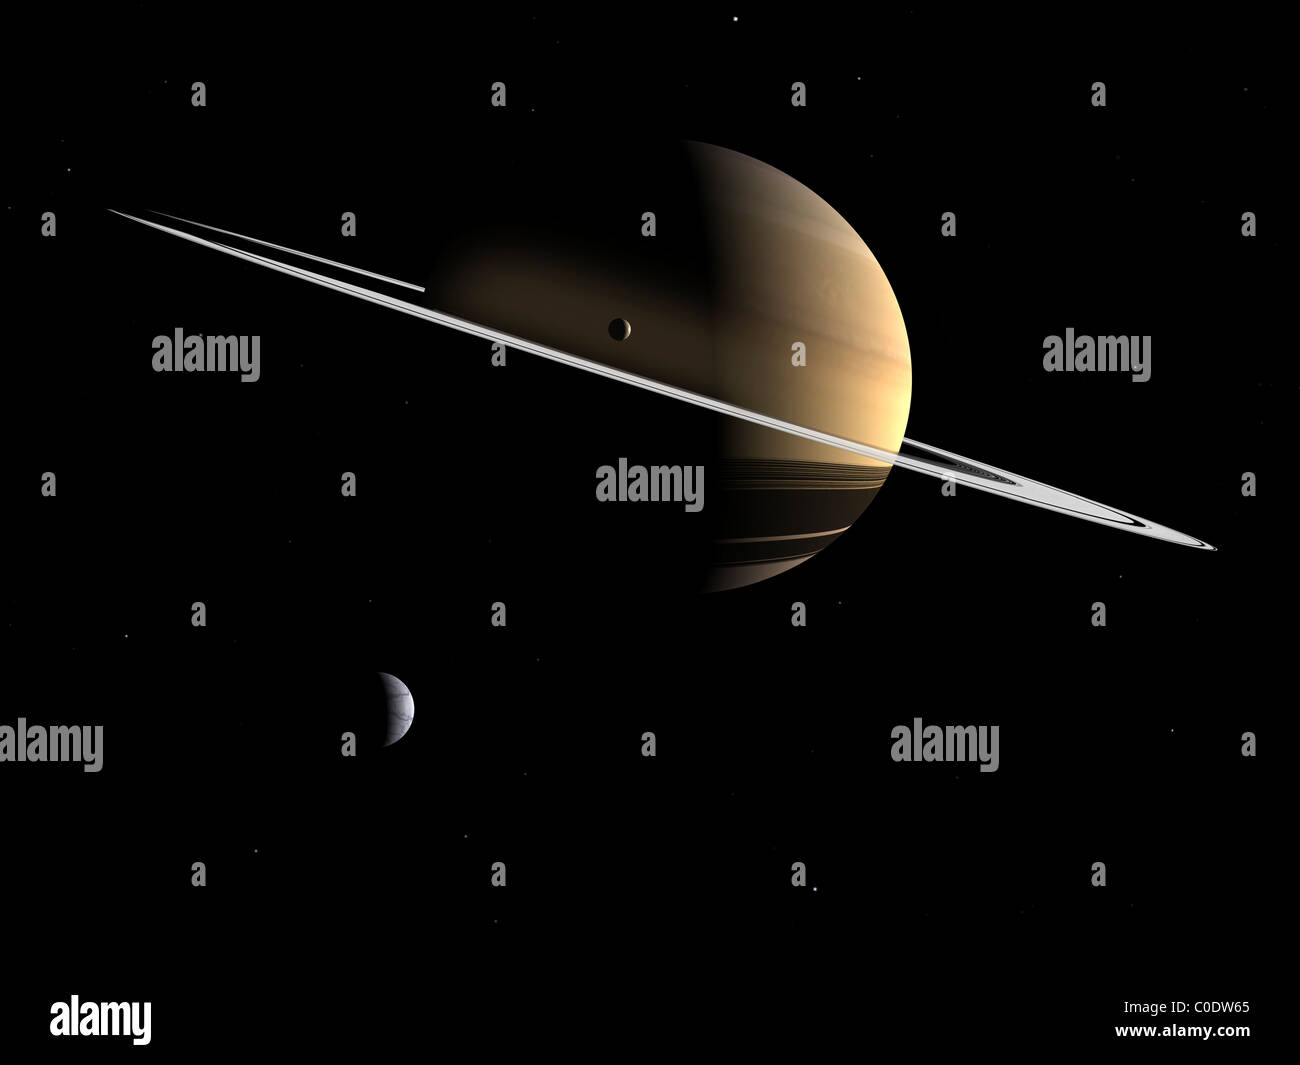 Künstlers Konzept des Saturn und seine Monde Dione und Tethys. Stockfoto